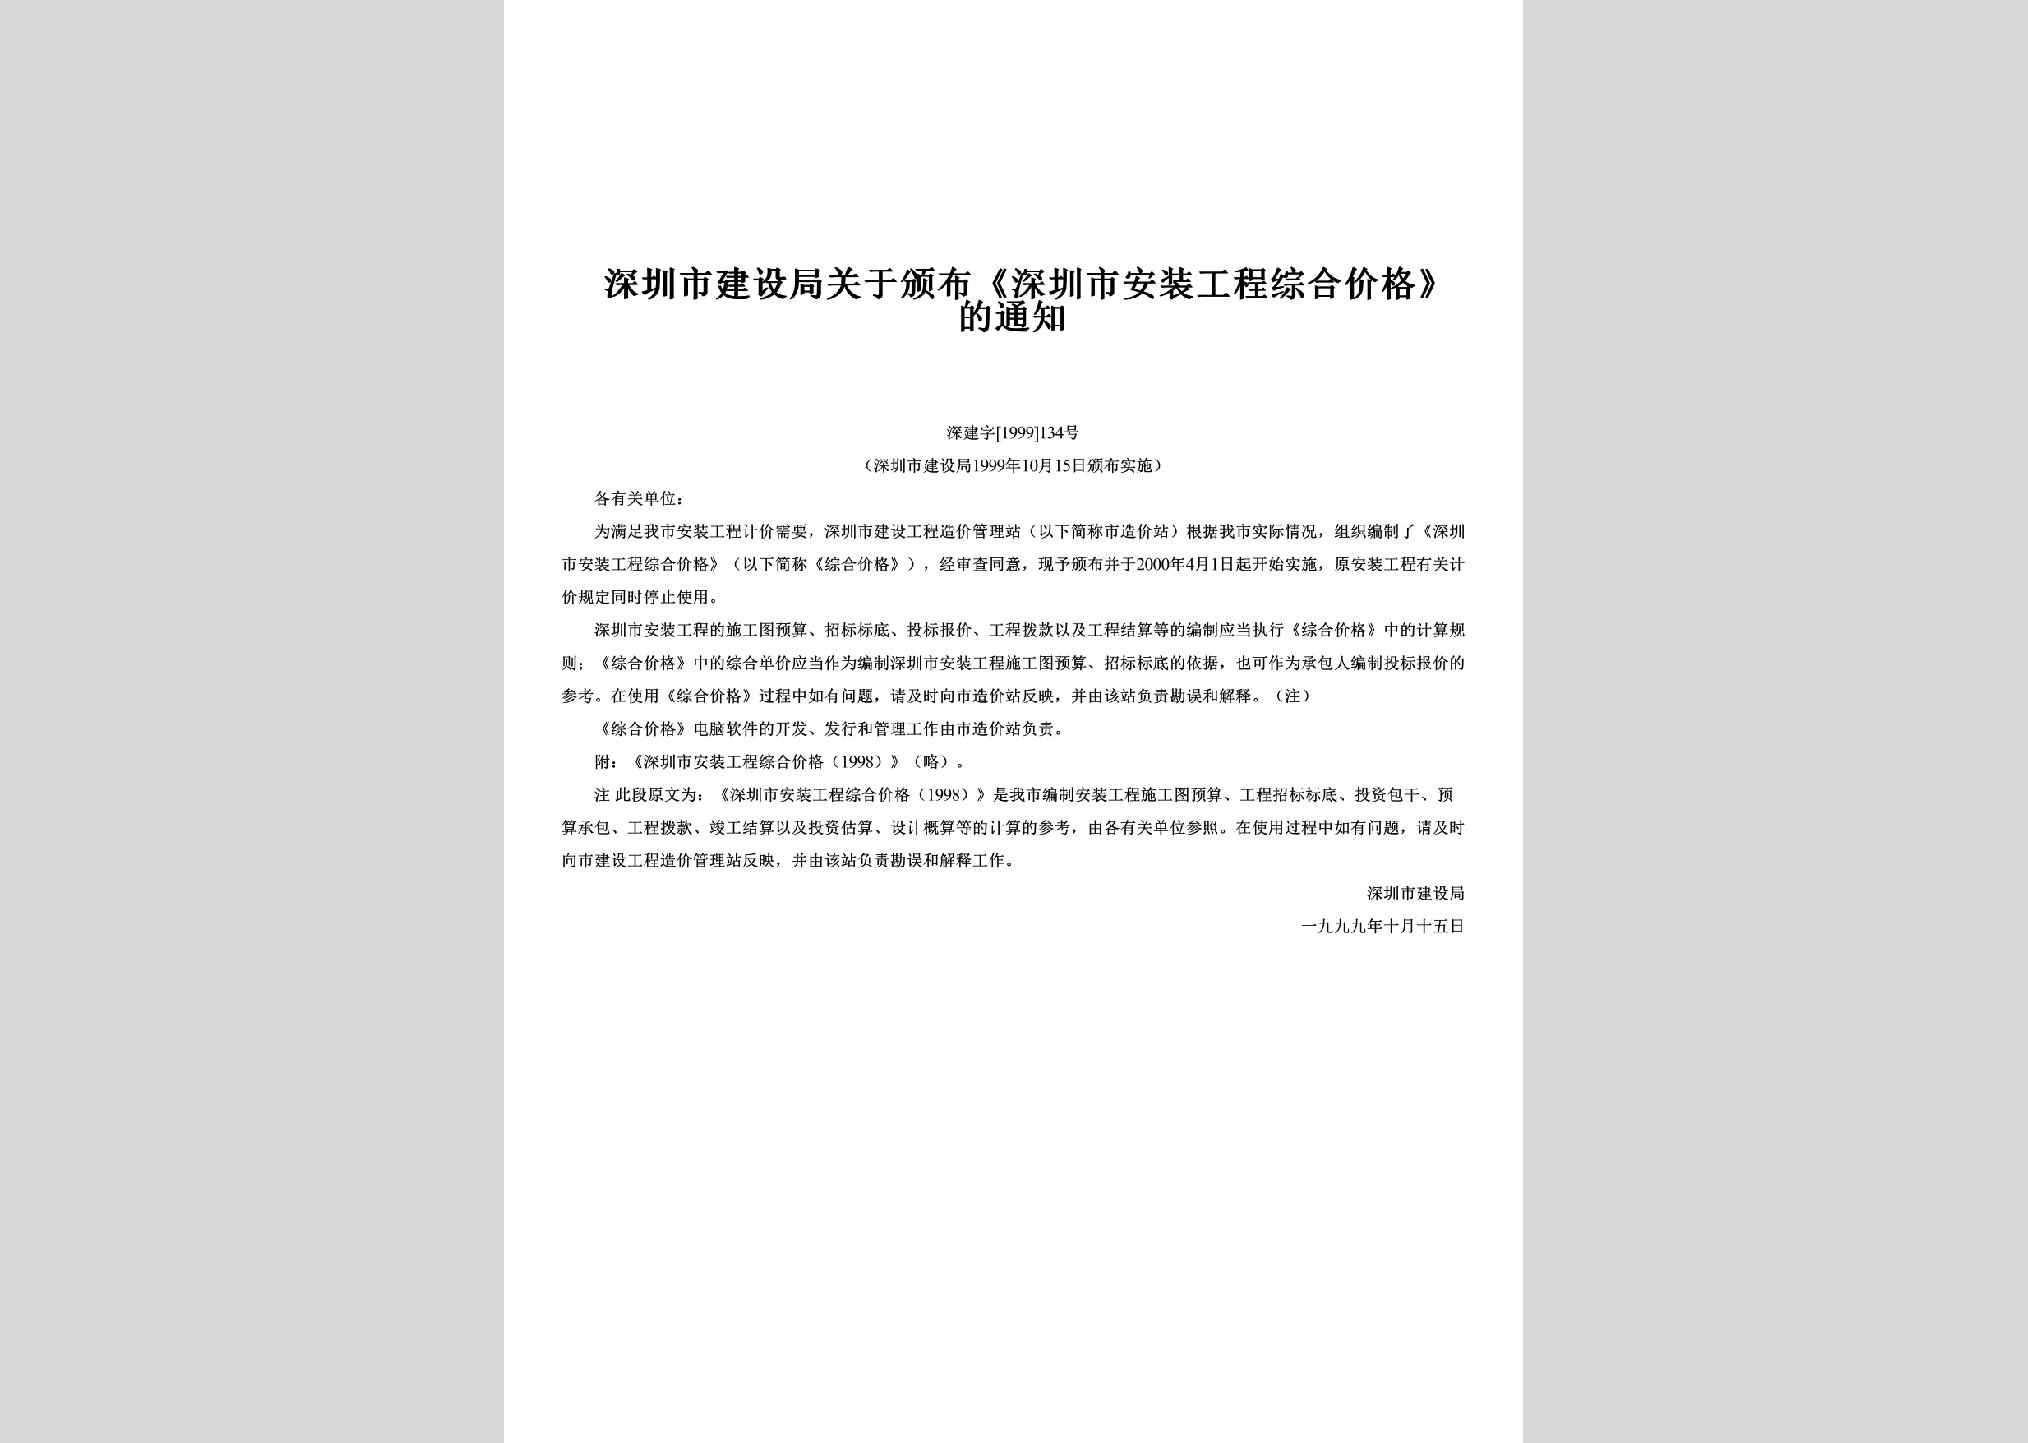 深建字[1999]134号：关于颁布《深圳市安装工程综合价格》的通知